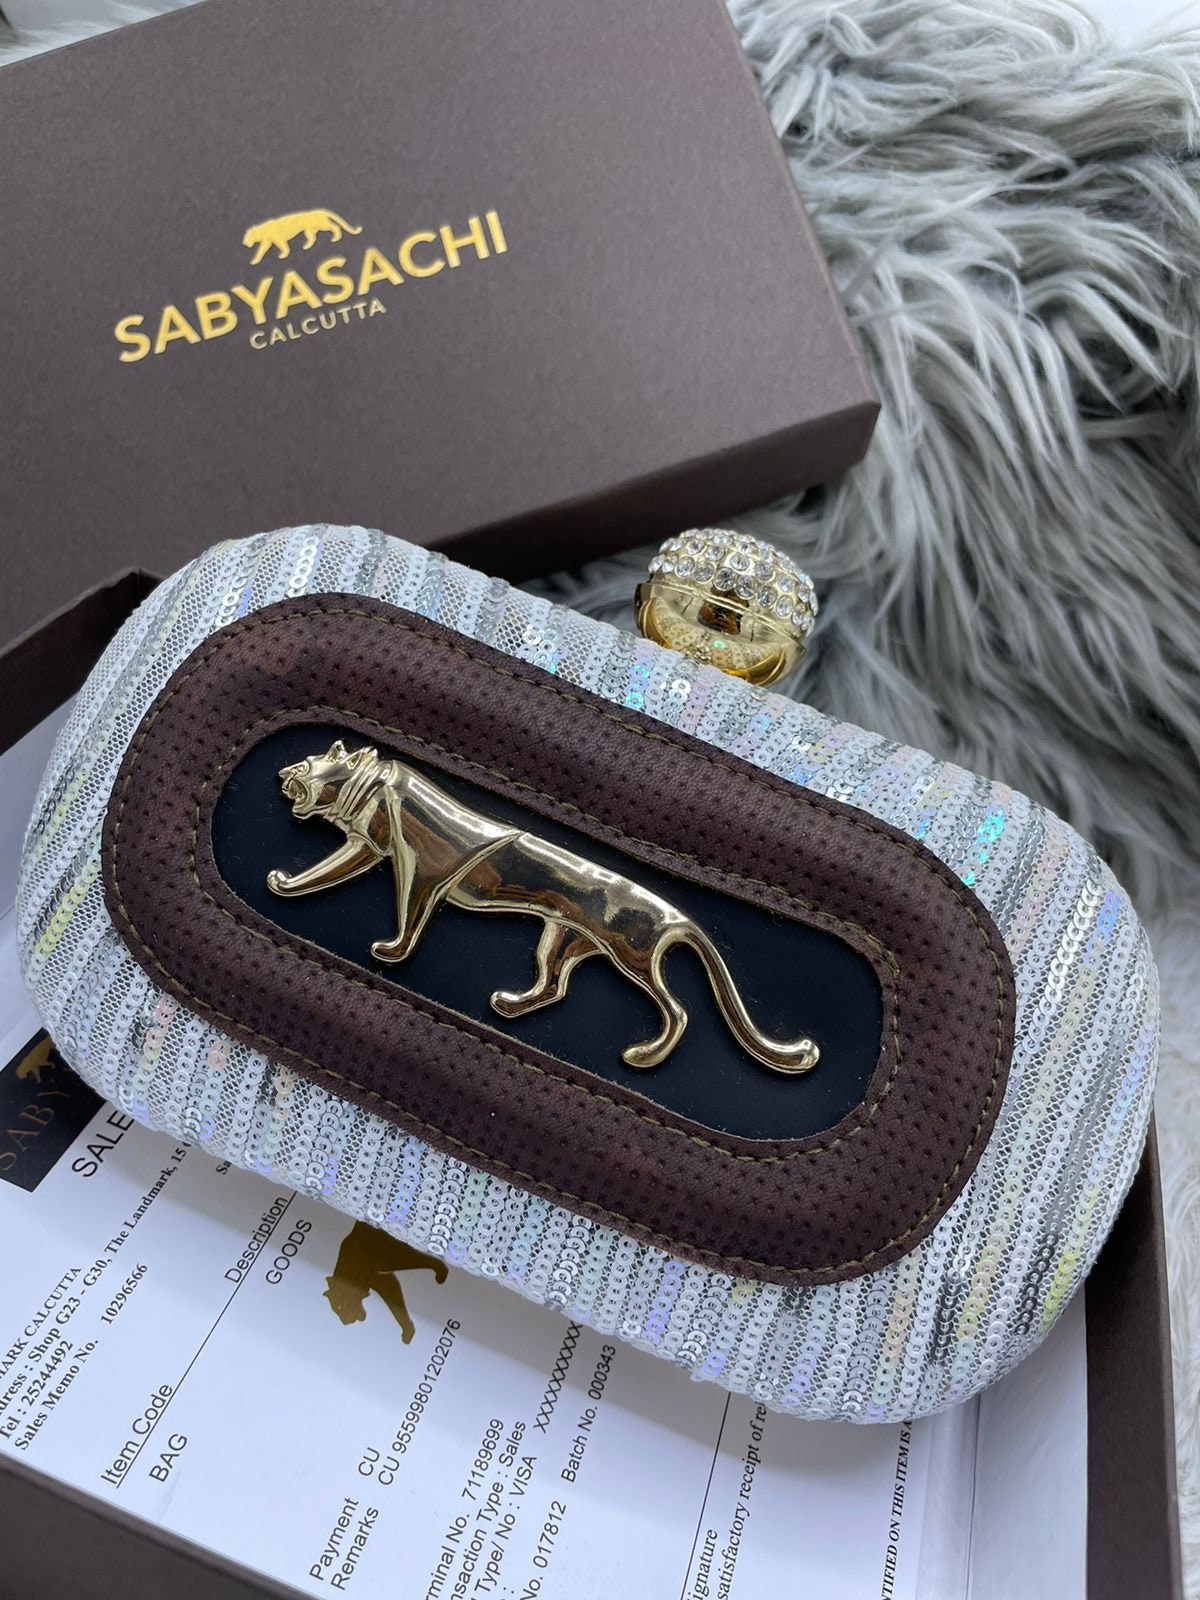 Indian Designer Sabyasachi Inspired Clutch Bag with Golden Tiger Logo for Bridesmaid Wedding Day Bridesmaid Gift Bridal Gift Tiger Clutch